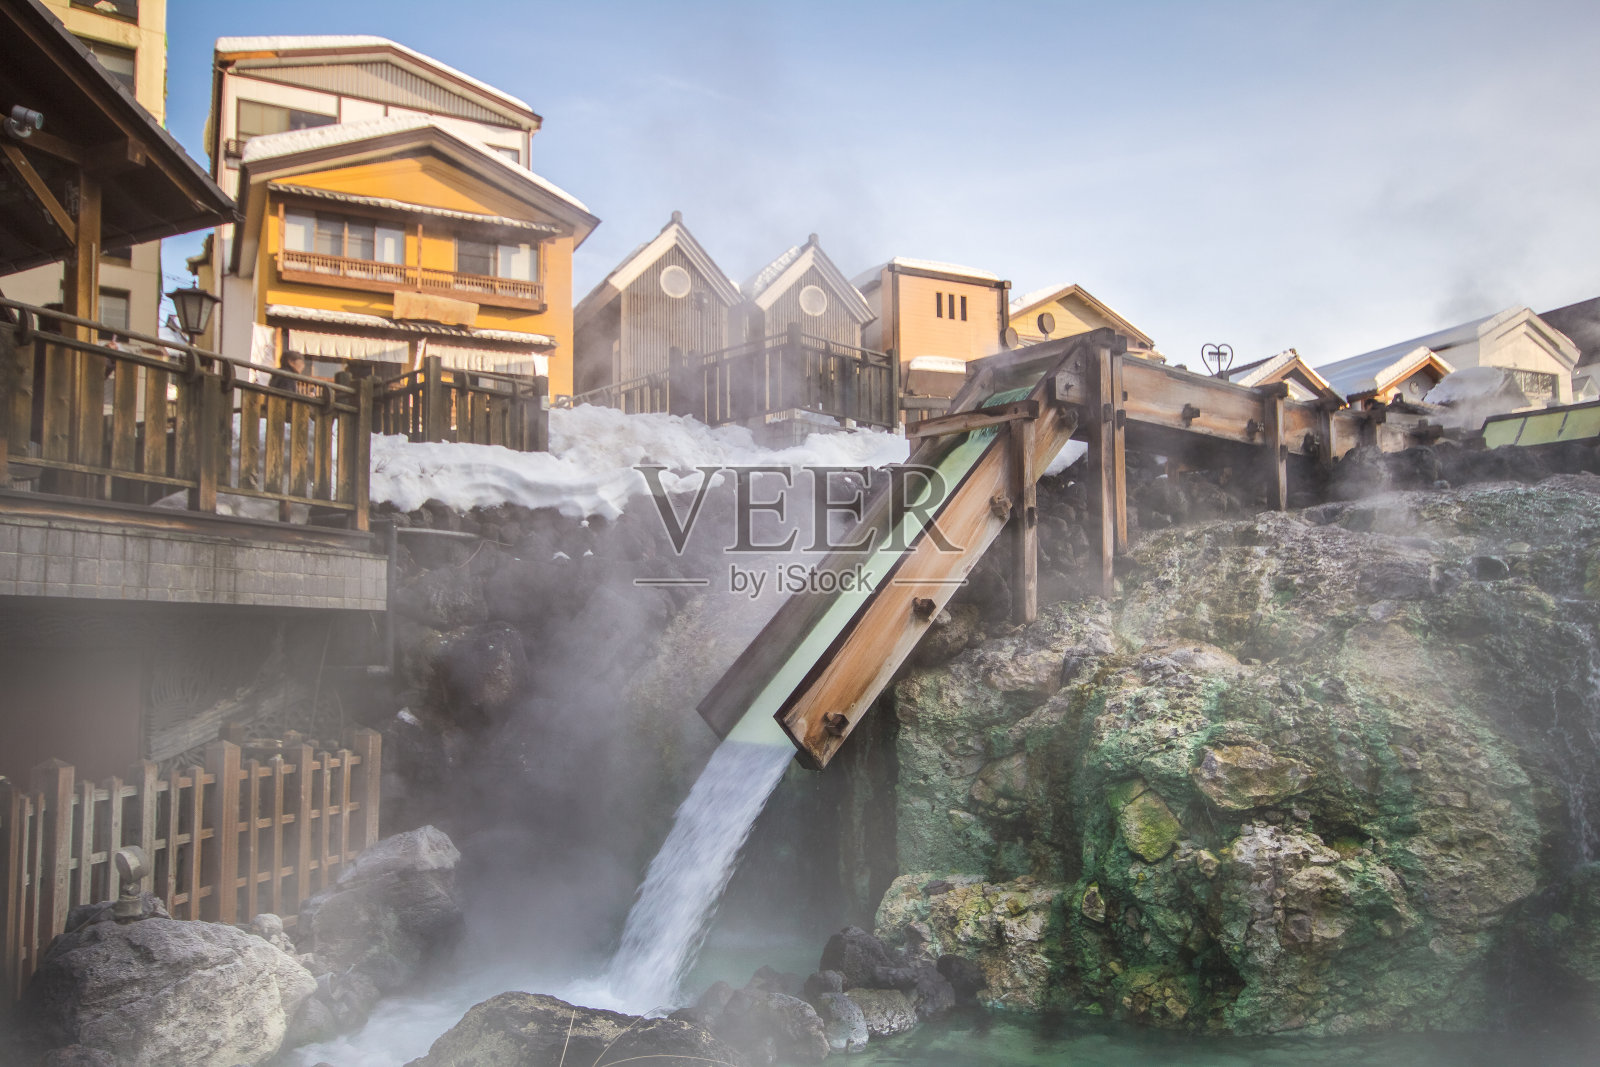 草津温泉是日本最著名的温泉之一照片摄影图片